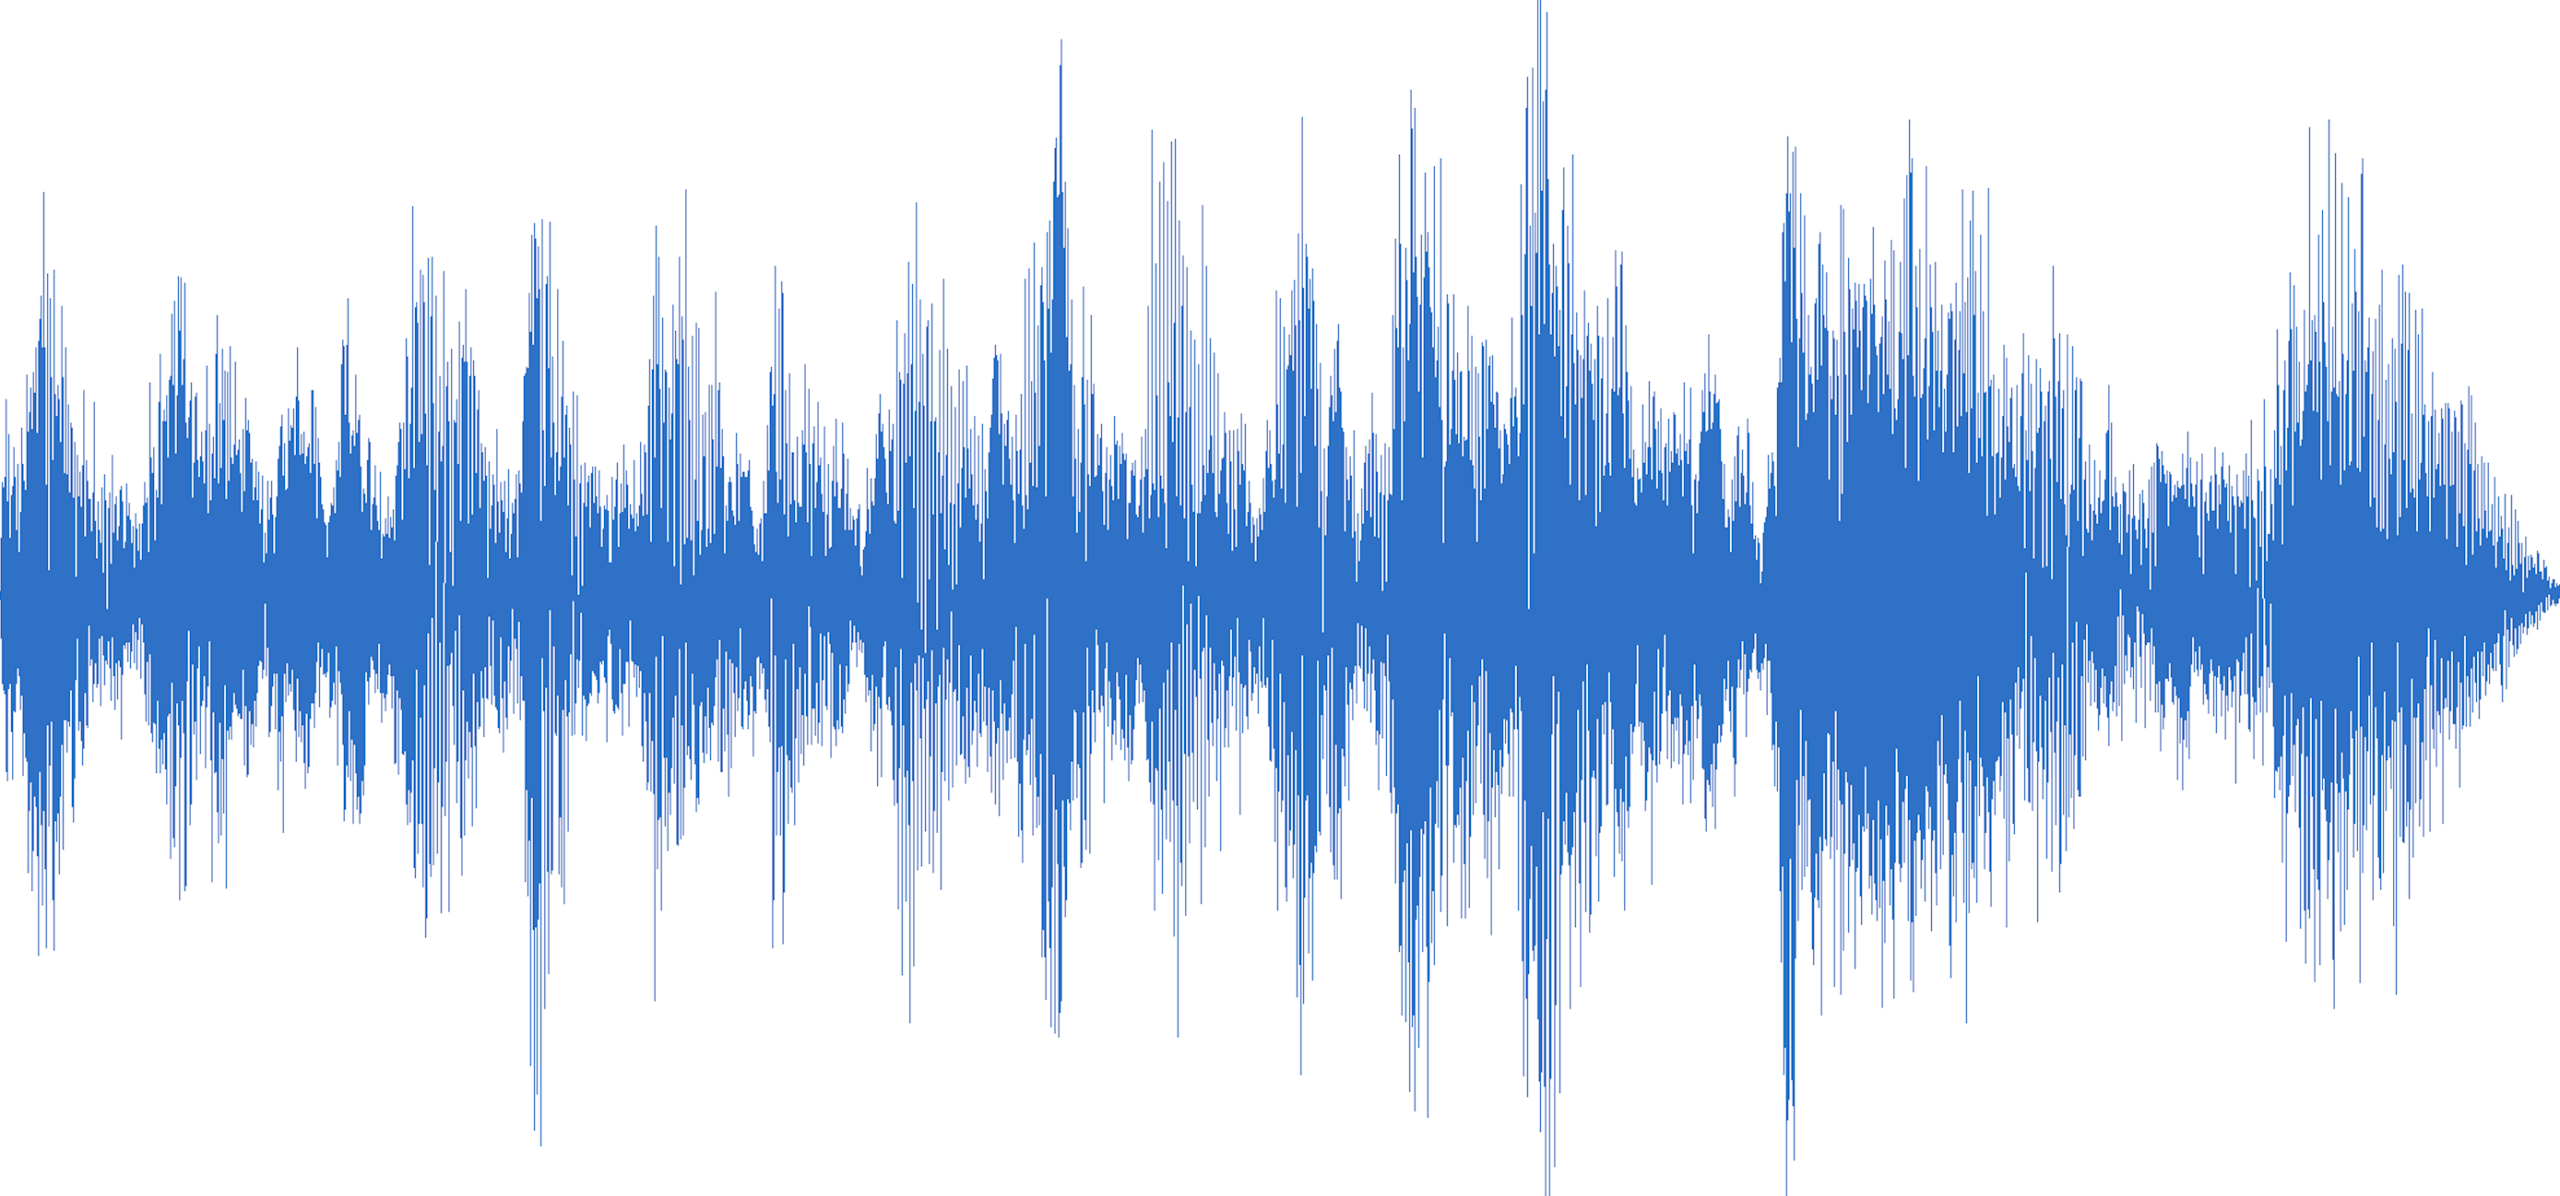 Звук без задержек. Звуковая волна. Звуковая дорожка. Звуковая волна на белом фоне. Изображение звука.